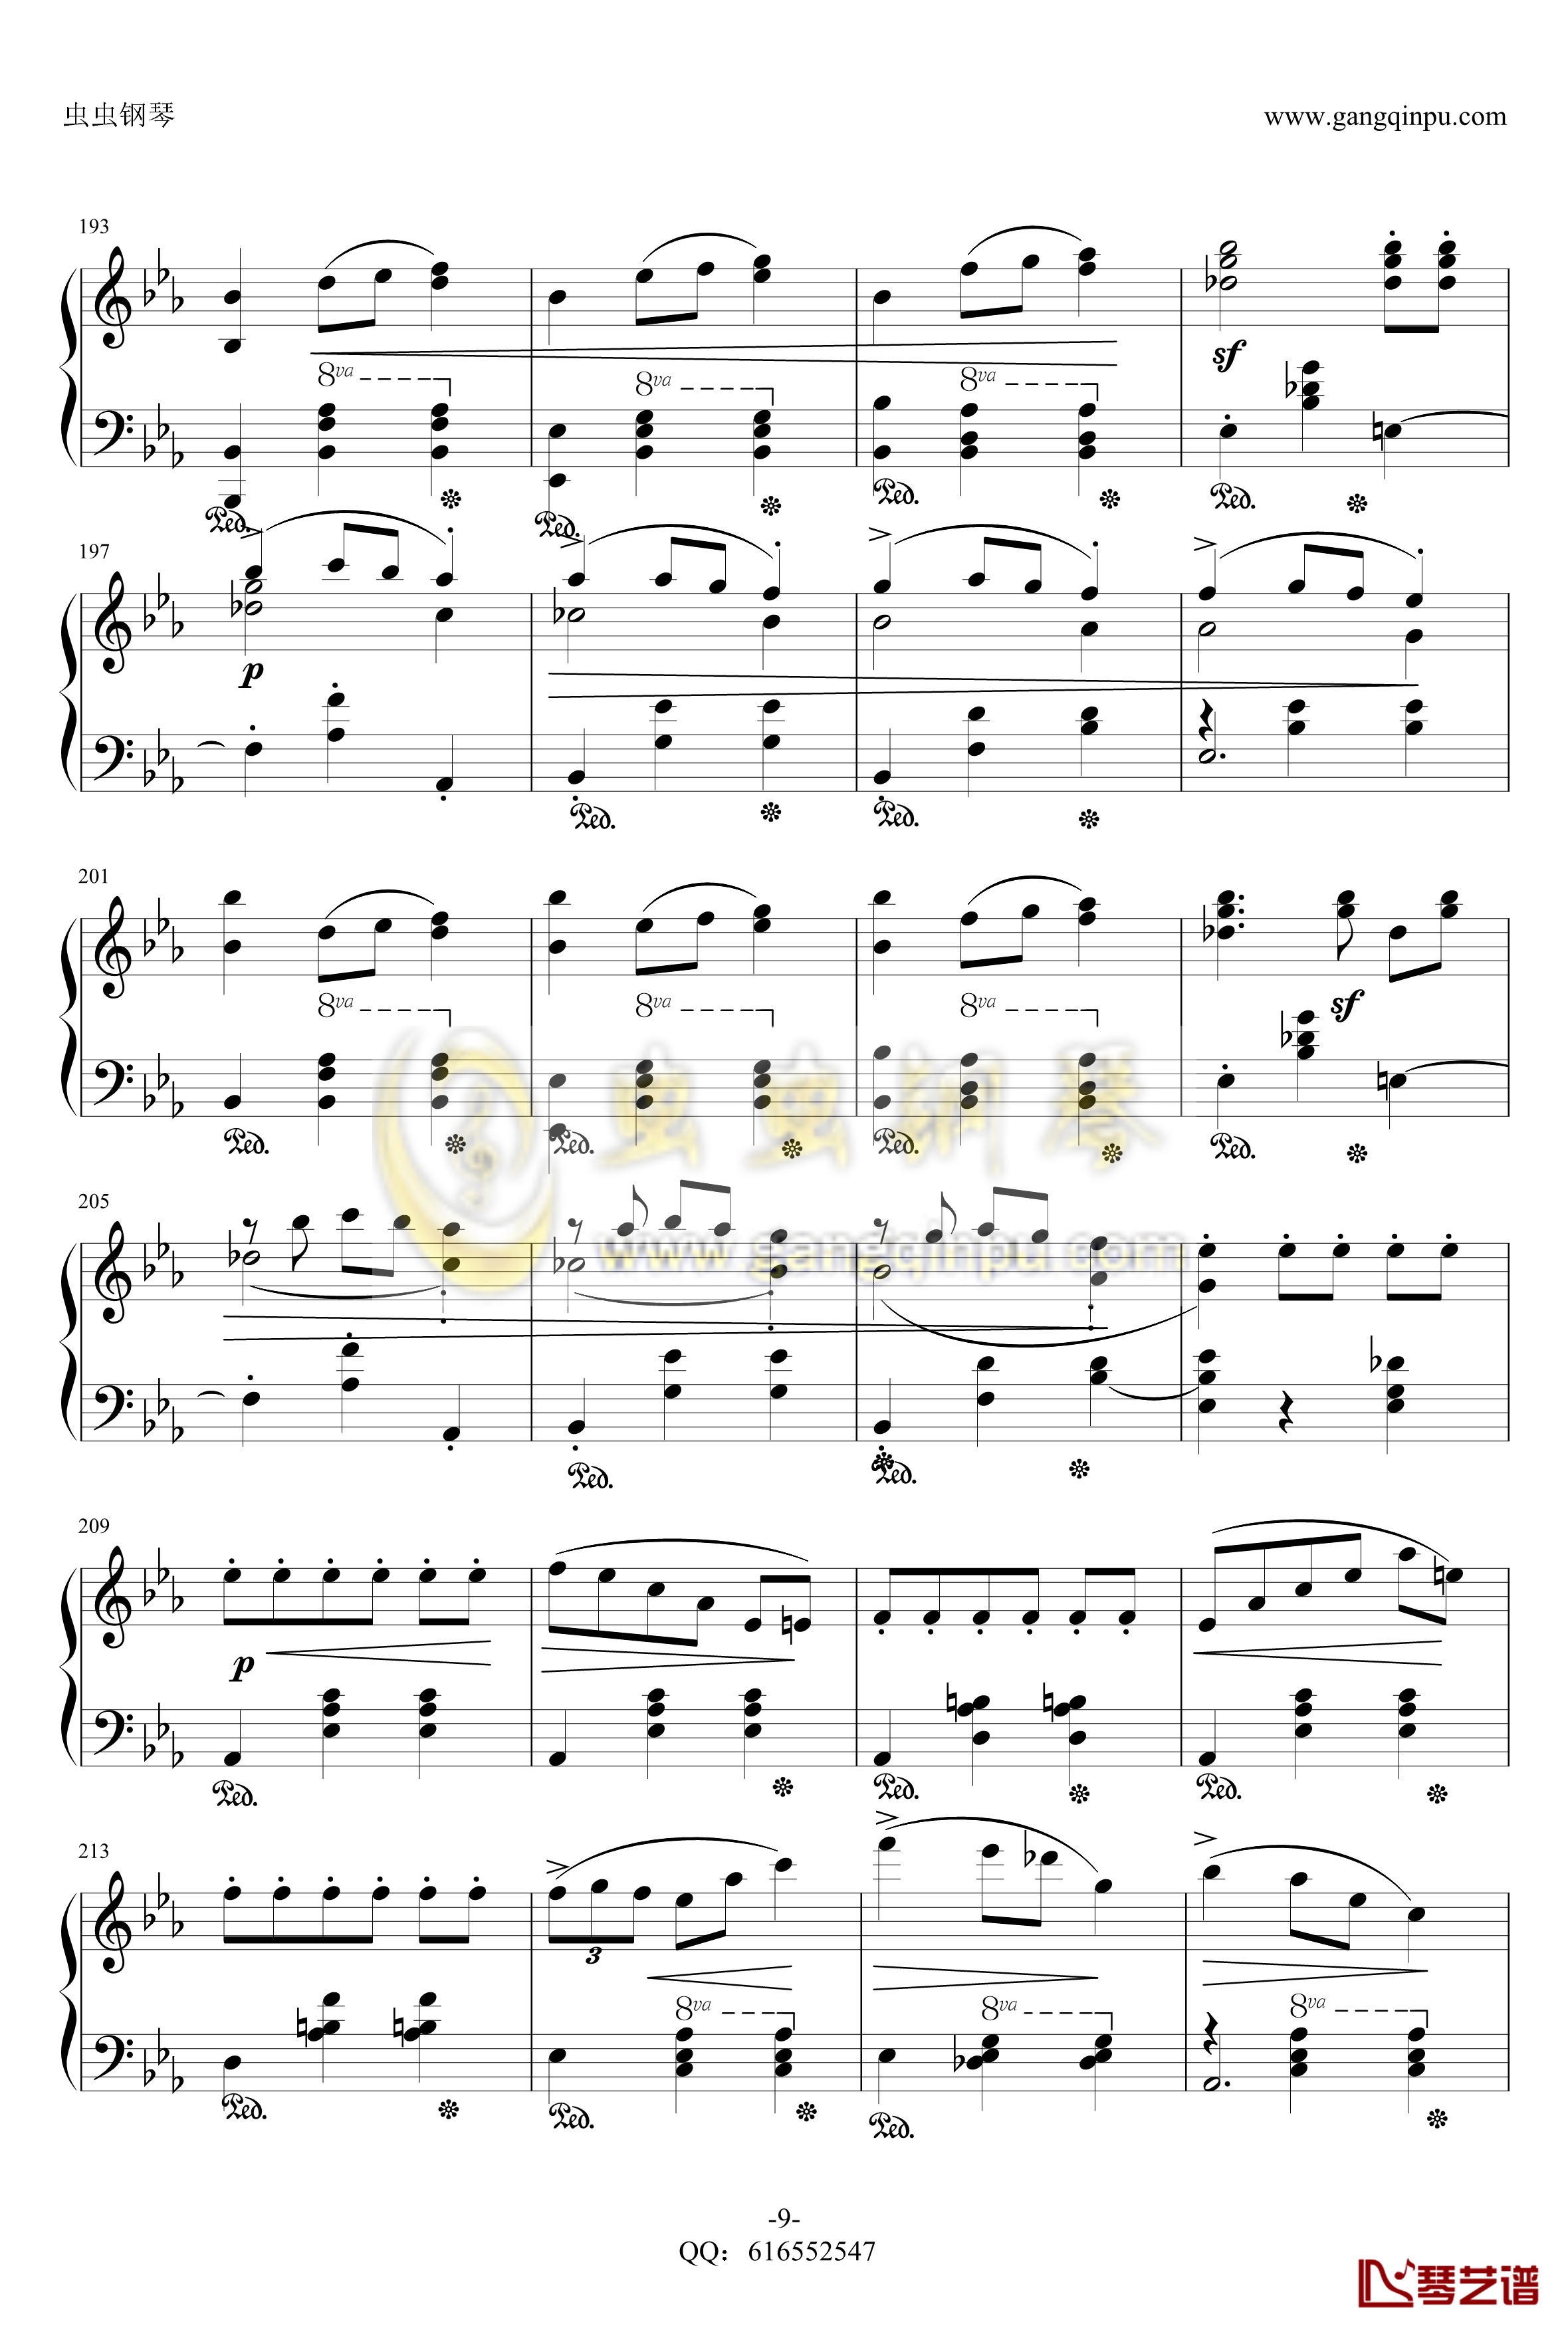 降E大调辉煌的大圆舞曲钢琴谱-金龙鱼-肖邦-chopin-9